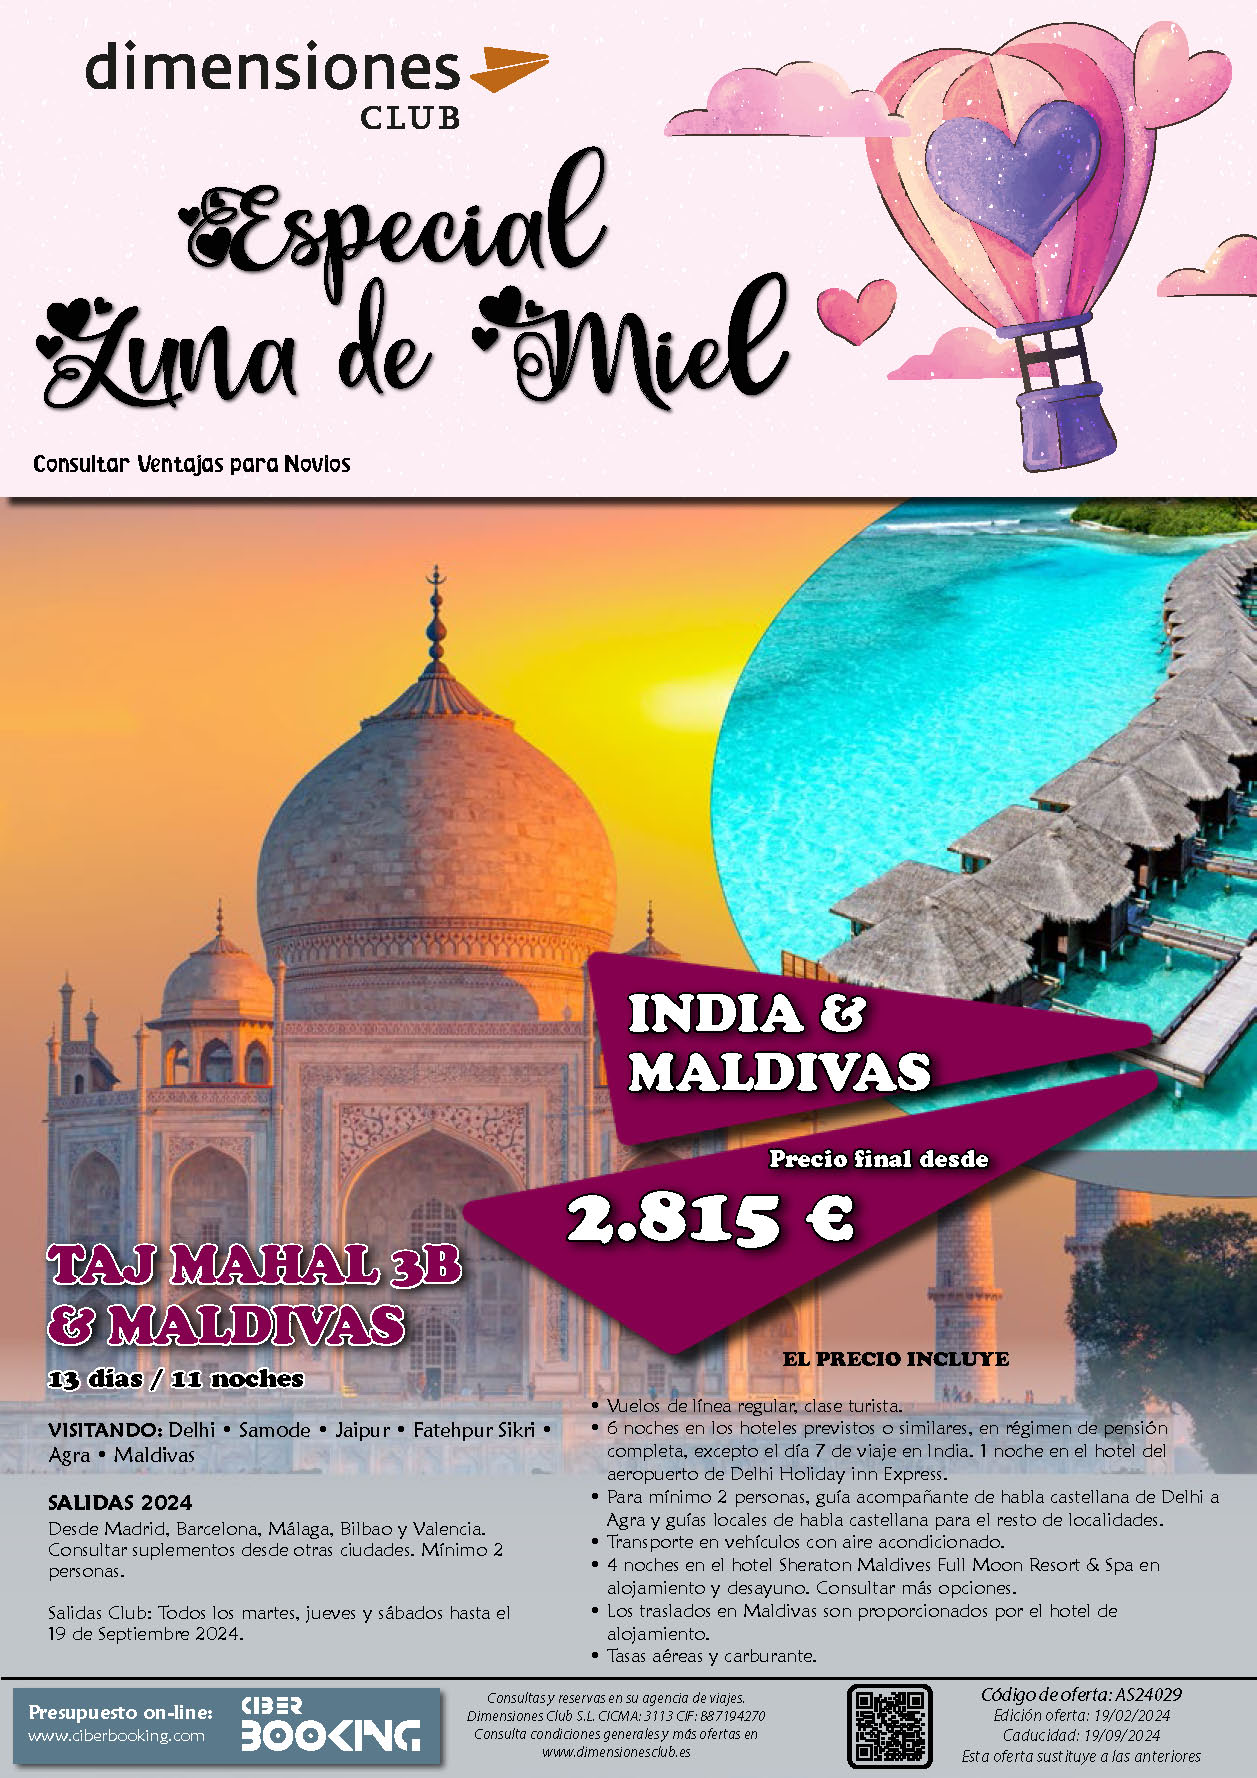 Oferta Dimensiones Club Luna de Miel en India y Maldivas 13 dias salidas desde Madrid Barcelona Bilbao Malaga Valencia Marzo a Septiembre 2024